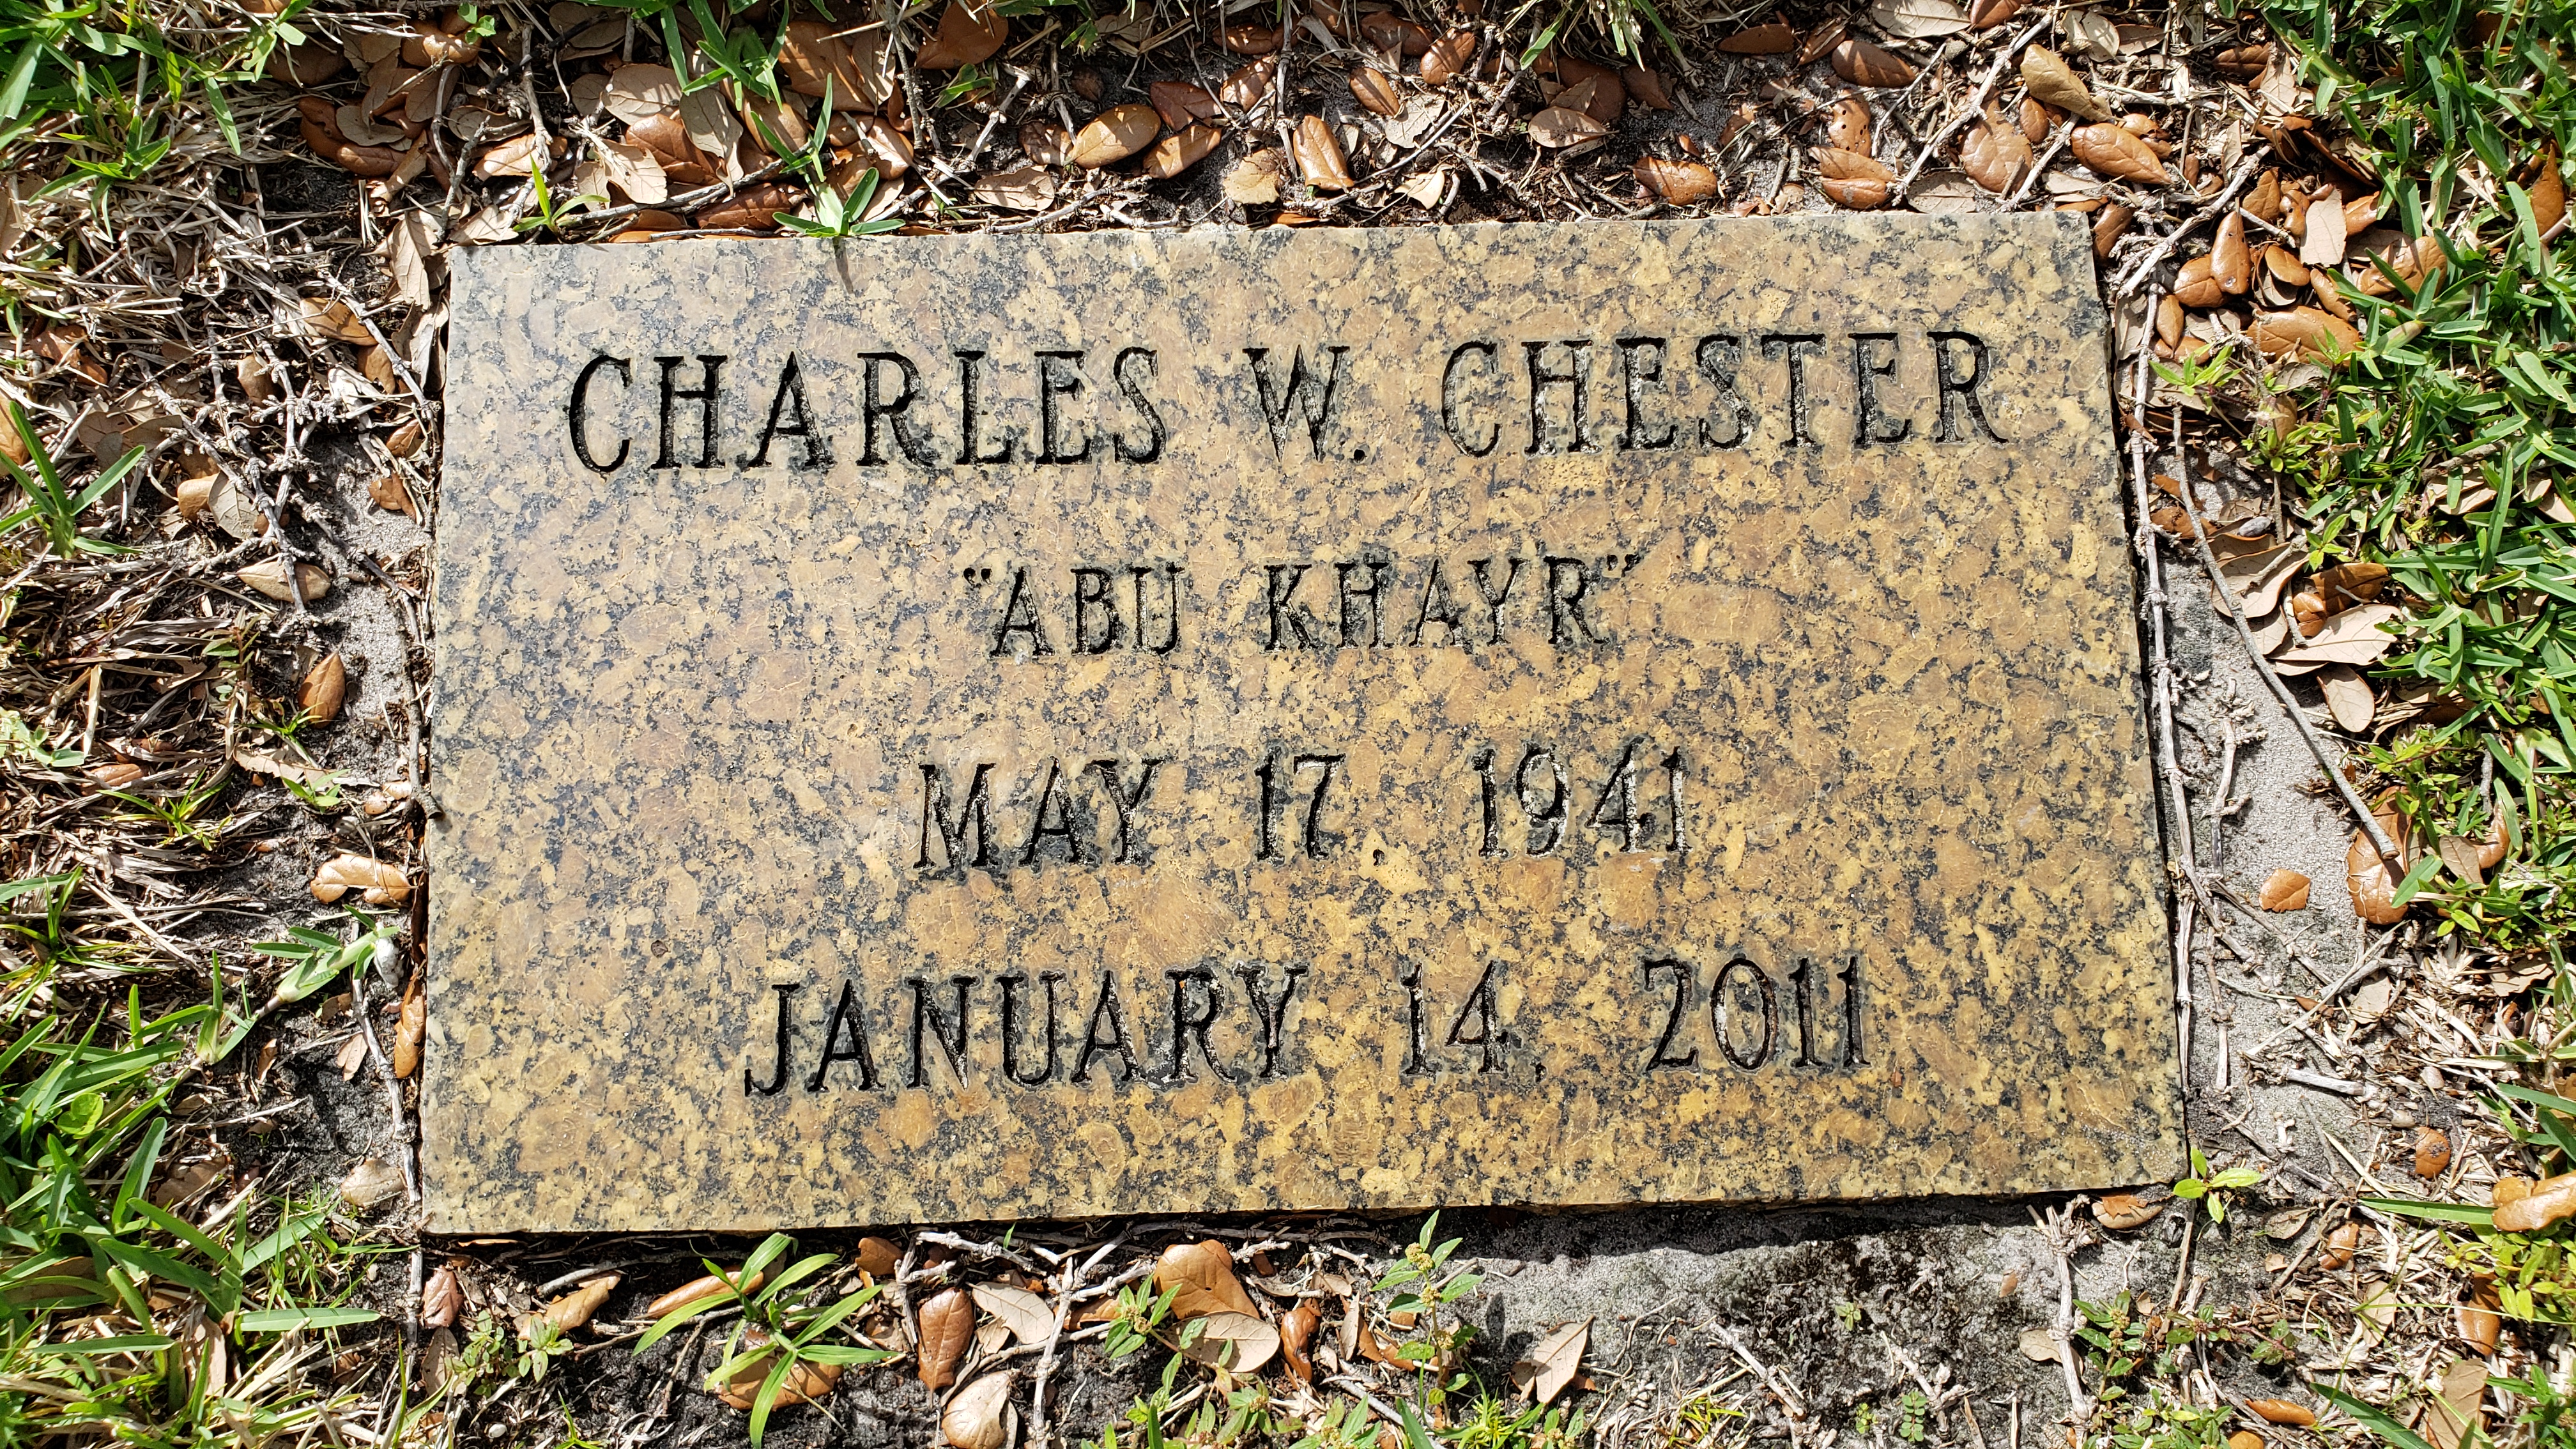 Charles W "Abu Khayr" Chester